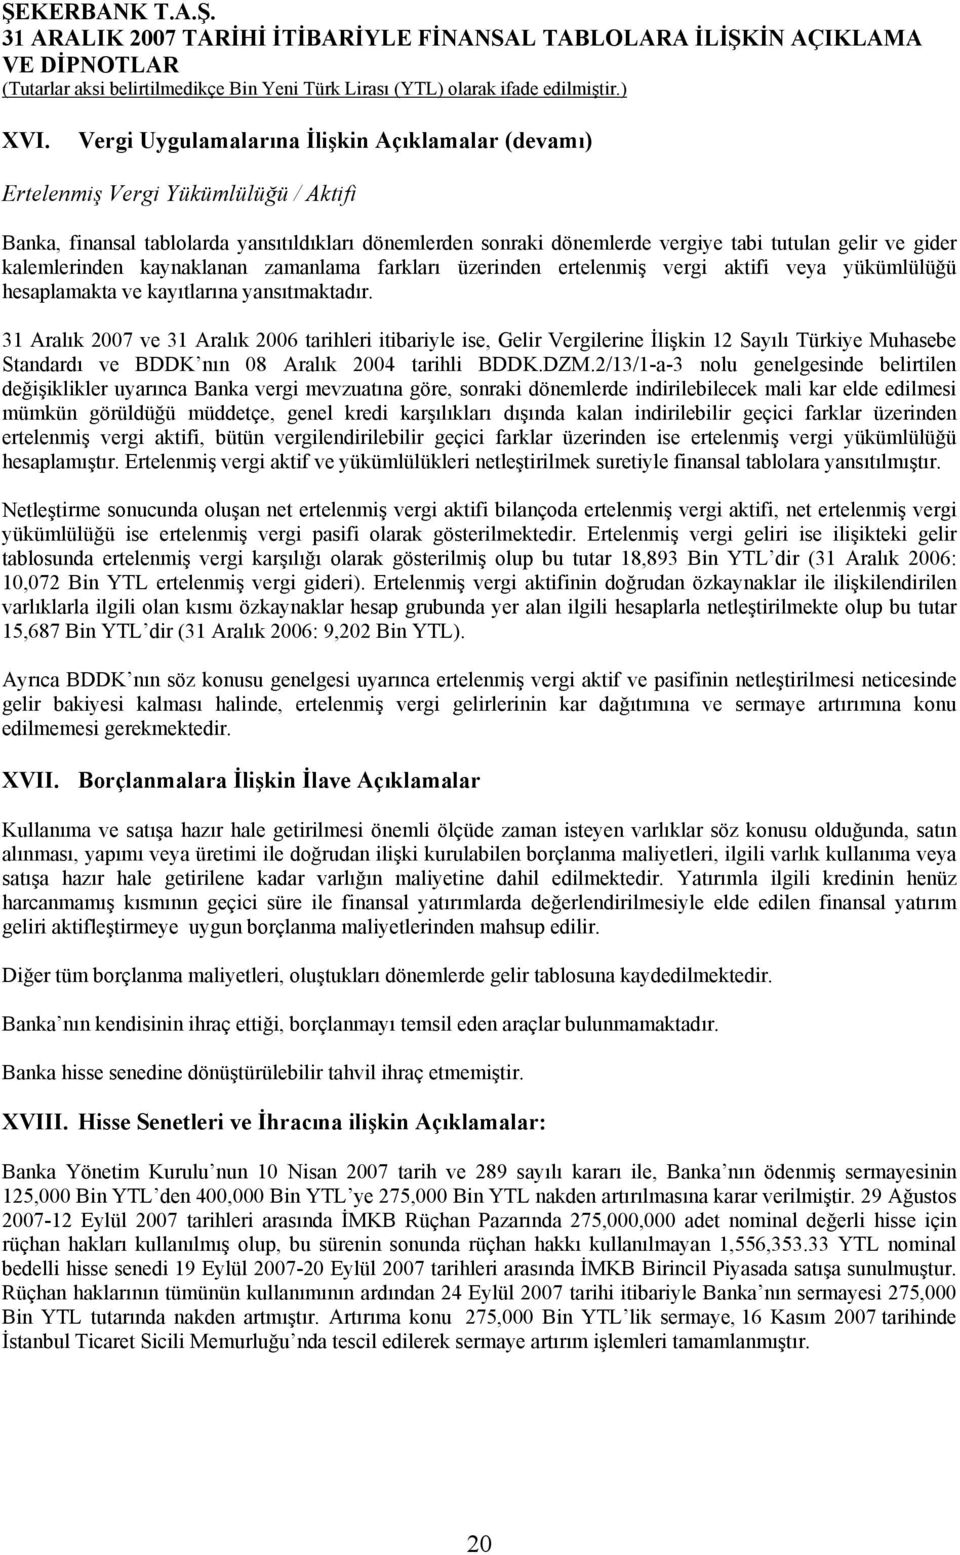 31 Aralık 2007 ve 31 Aralık 2006 tarihleri itibariyle ise, Gelir Vergilerine İlişkin 12 Sayılı Türkiye Muhasebe Standardı ve BDDK nın 08 Aralık 2004 tarihli BDDK.DZM.